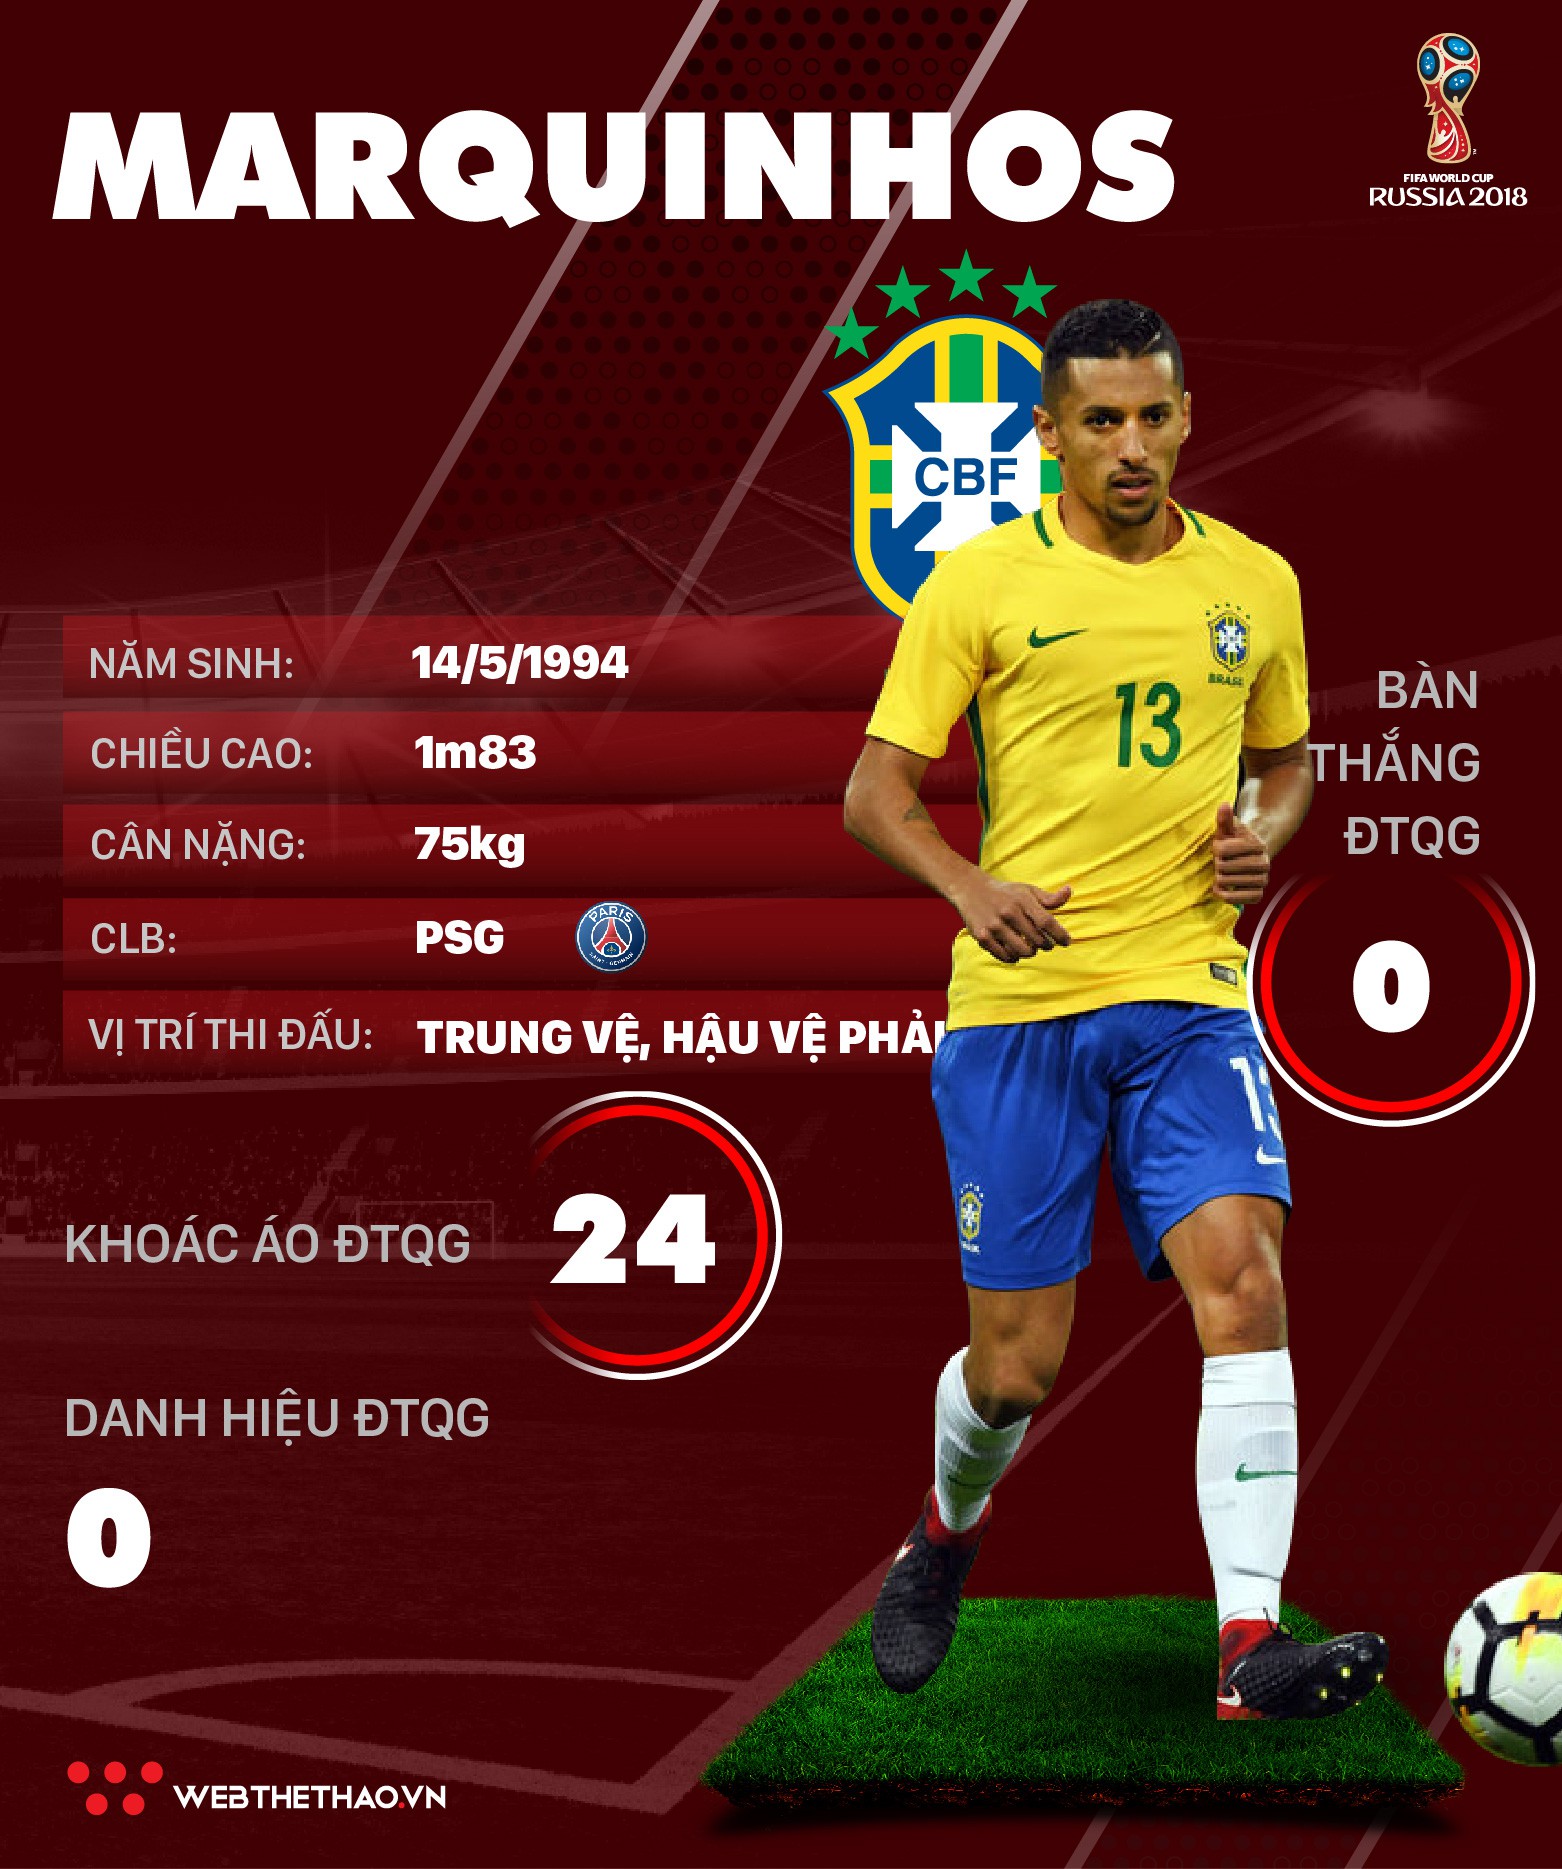 Thông tin cầu thủ Marquinhos của ĐT Brazil dự World Cup 2018